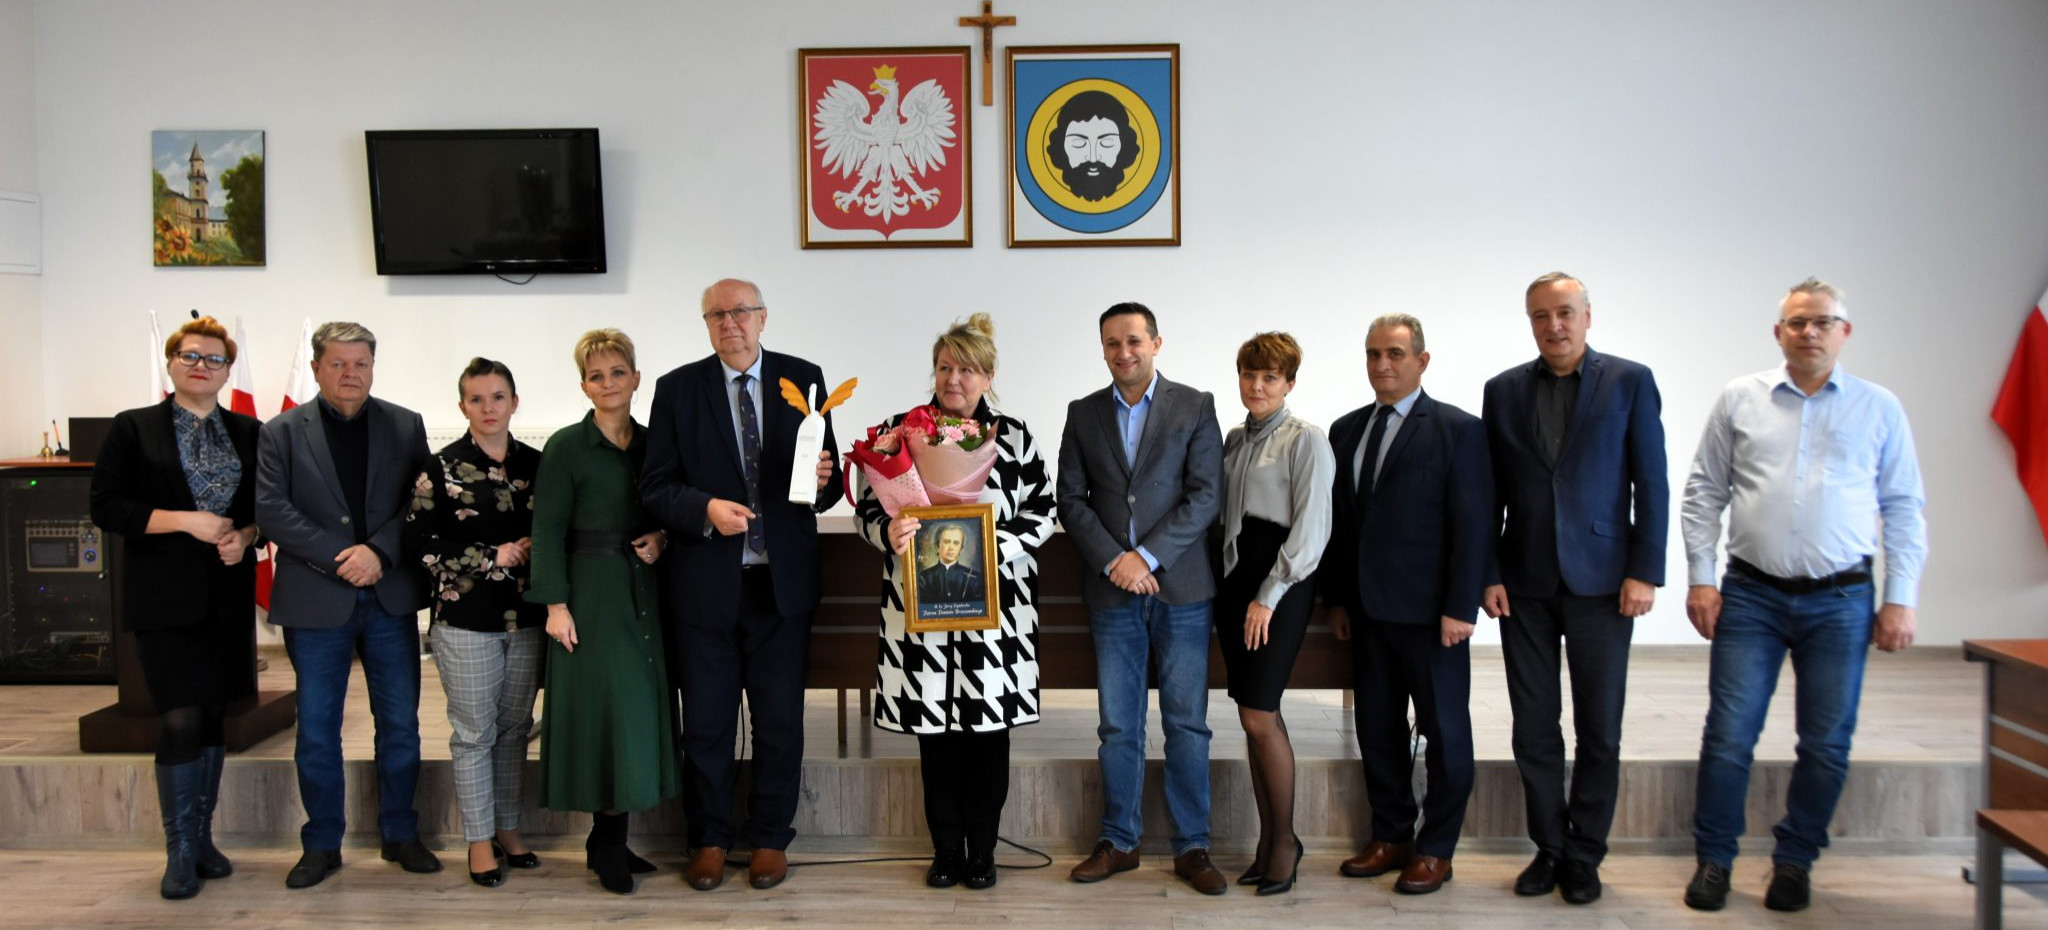 Burmistrz Brzozowa Szymon Stapiński gościł Małgorzatę Chmiel, laureatkę X edycji Konkursu “Ambasador Wschodu”